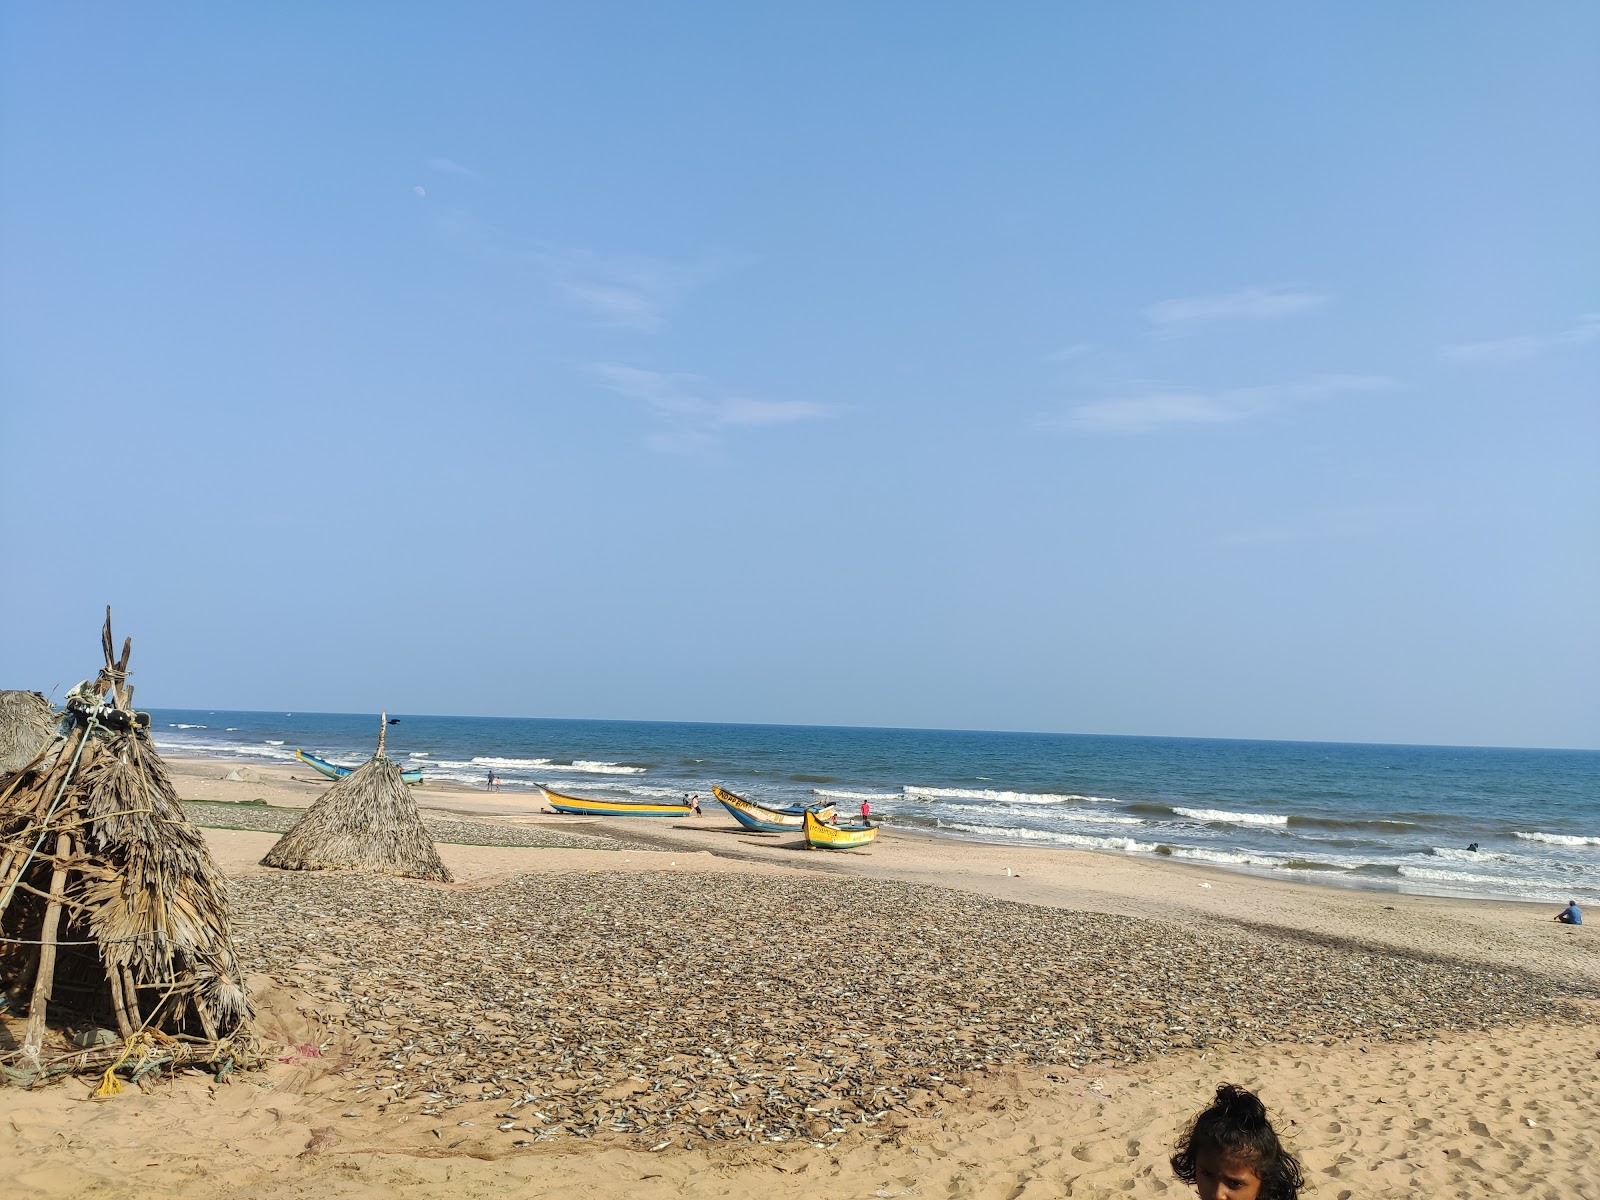 Danvaipeta Beach'in fotoğrafı parlak kum yüzey ile